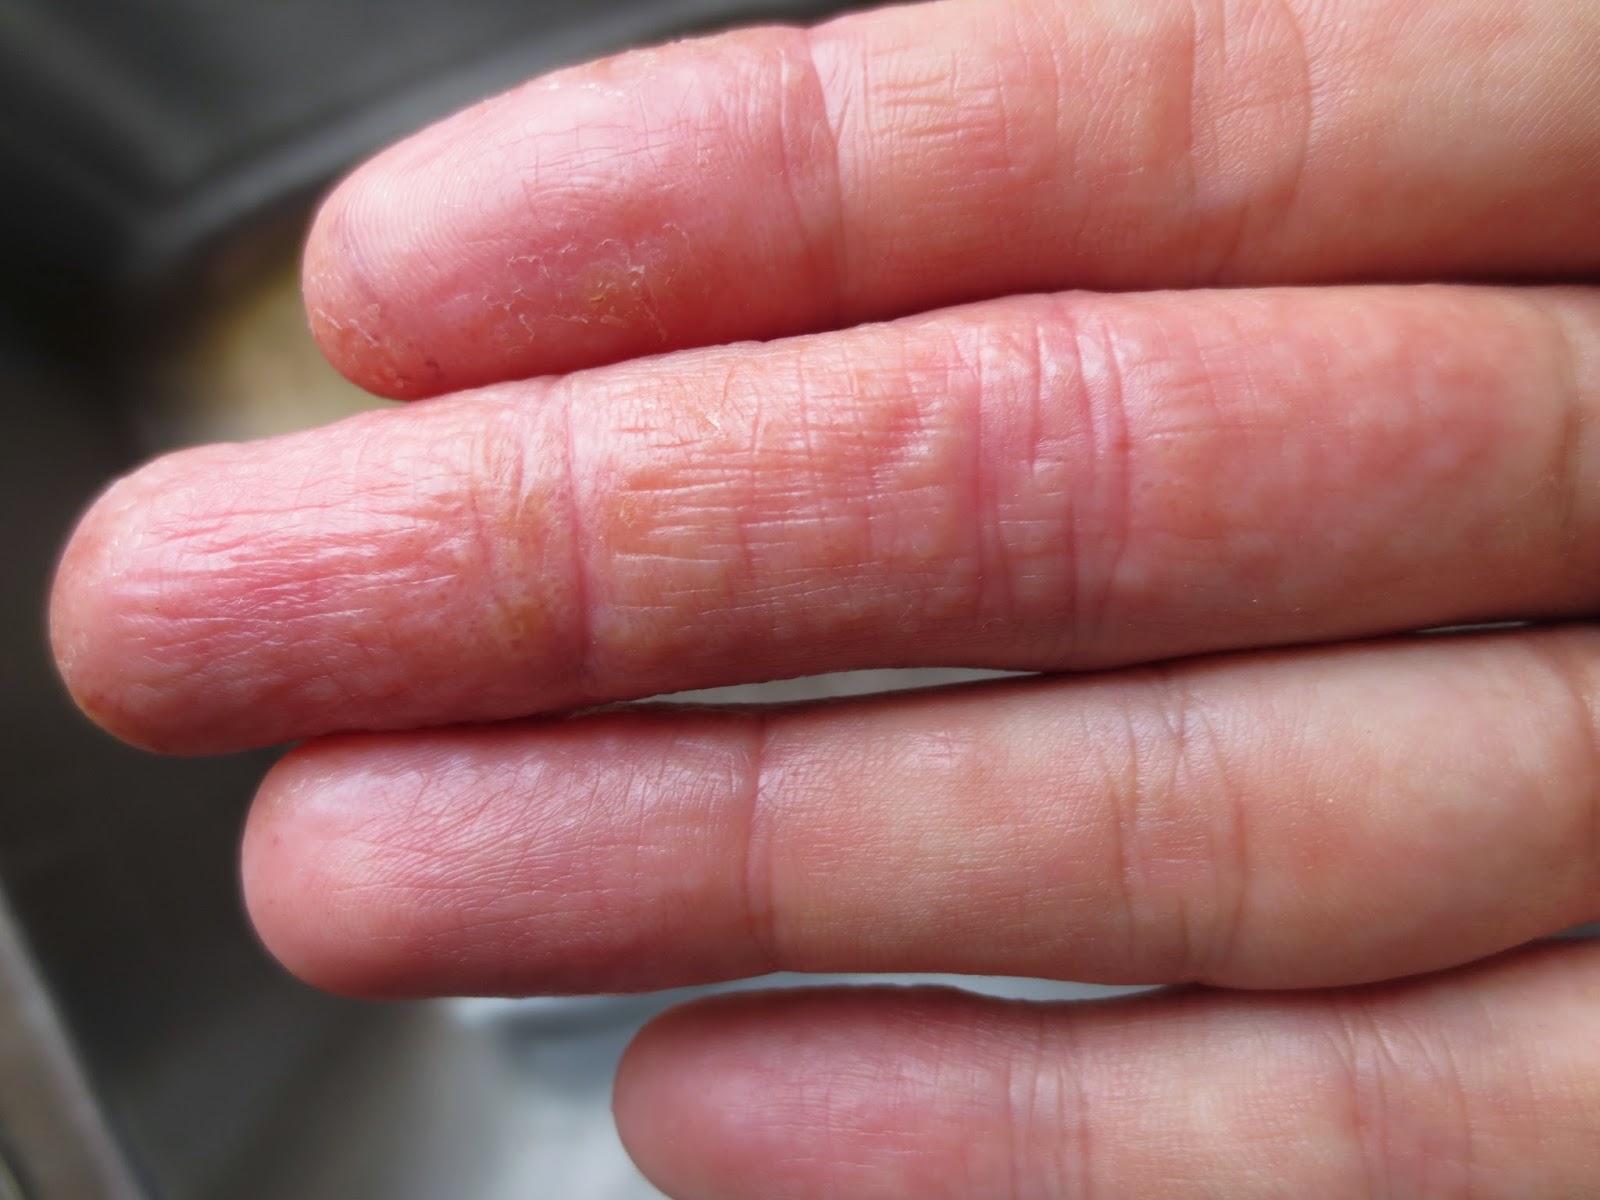 SKIN DISEASE TYPES: Vesicular Hand Dermatitis (Skin Disease type)